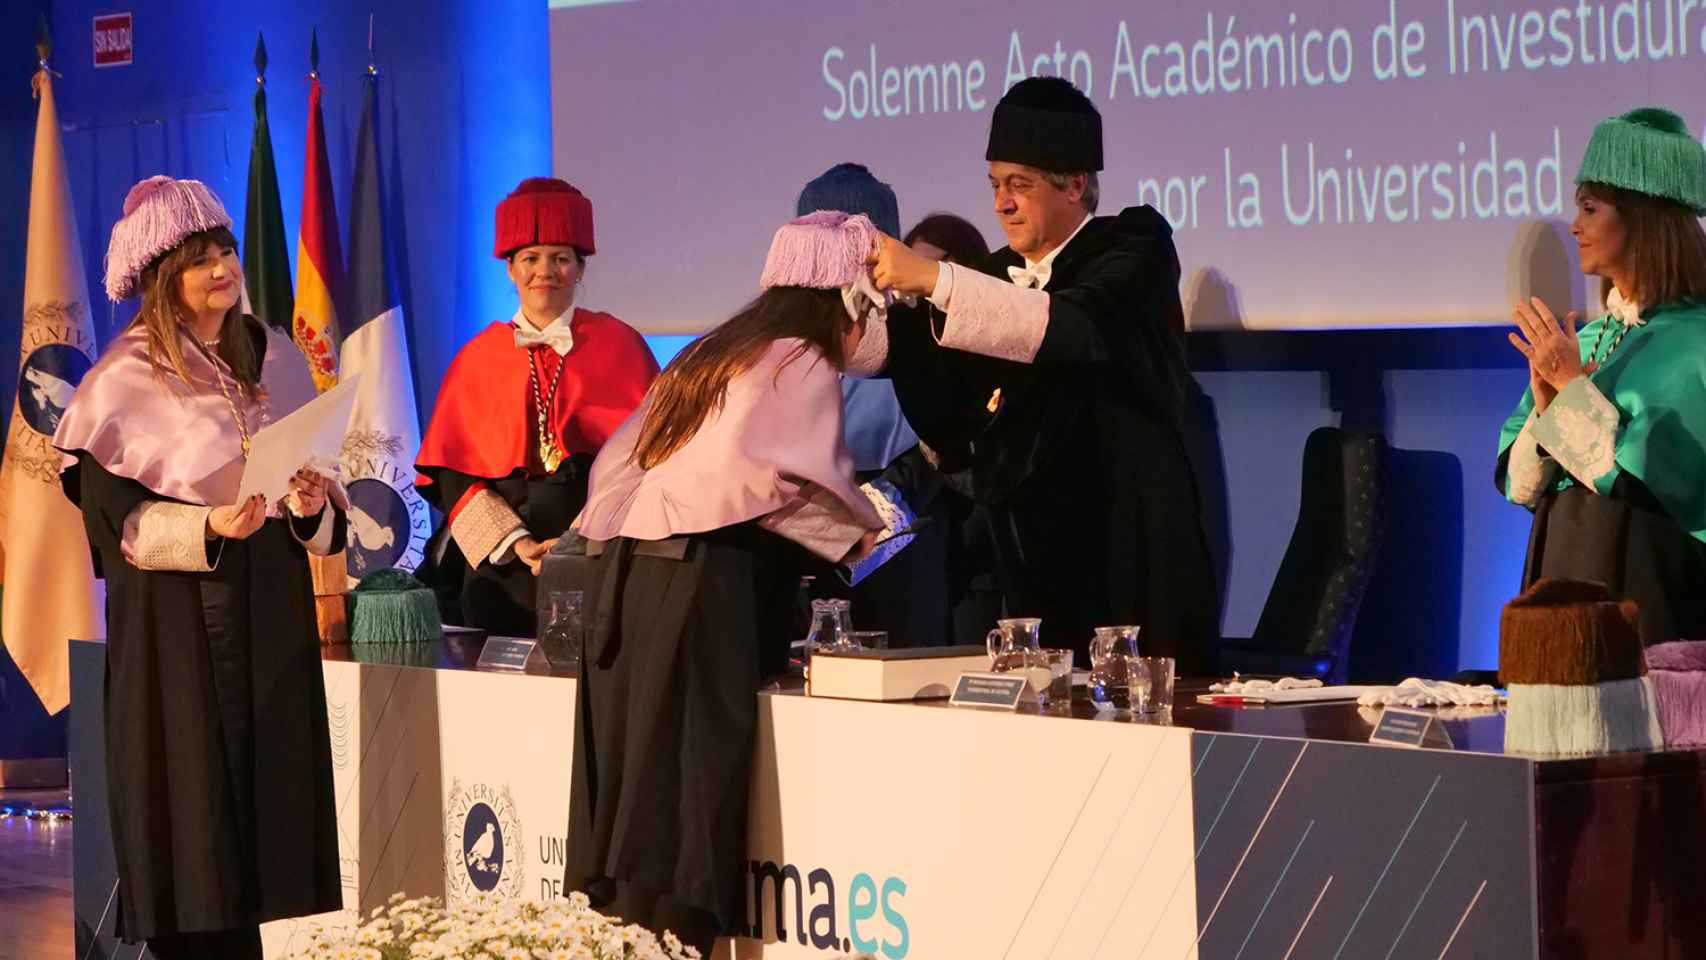 El rector colocándole el birrete a una de las nuevas doctoras de la Universidad de Málaga.